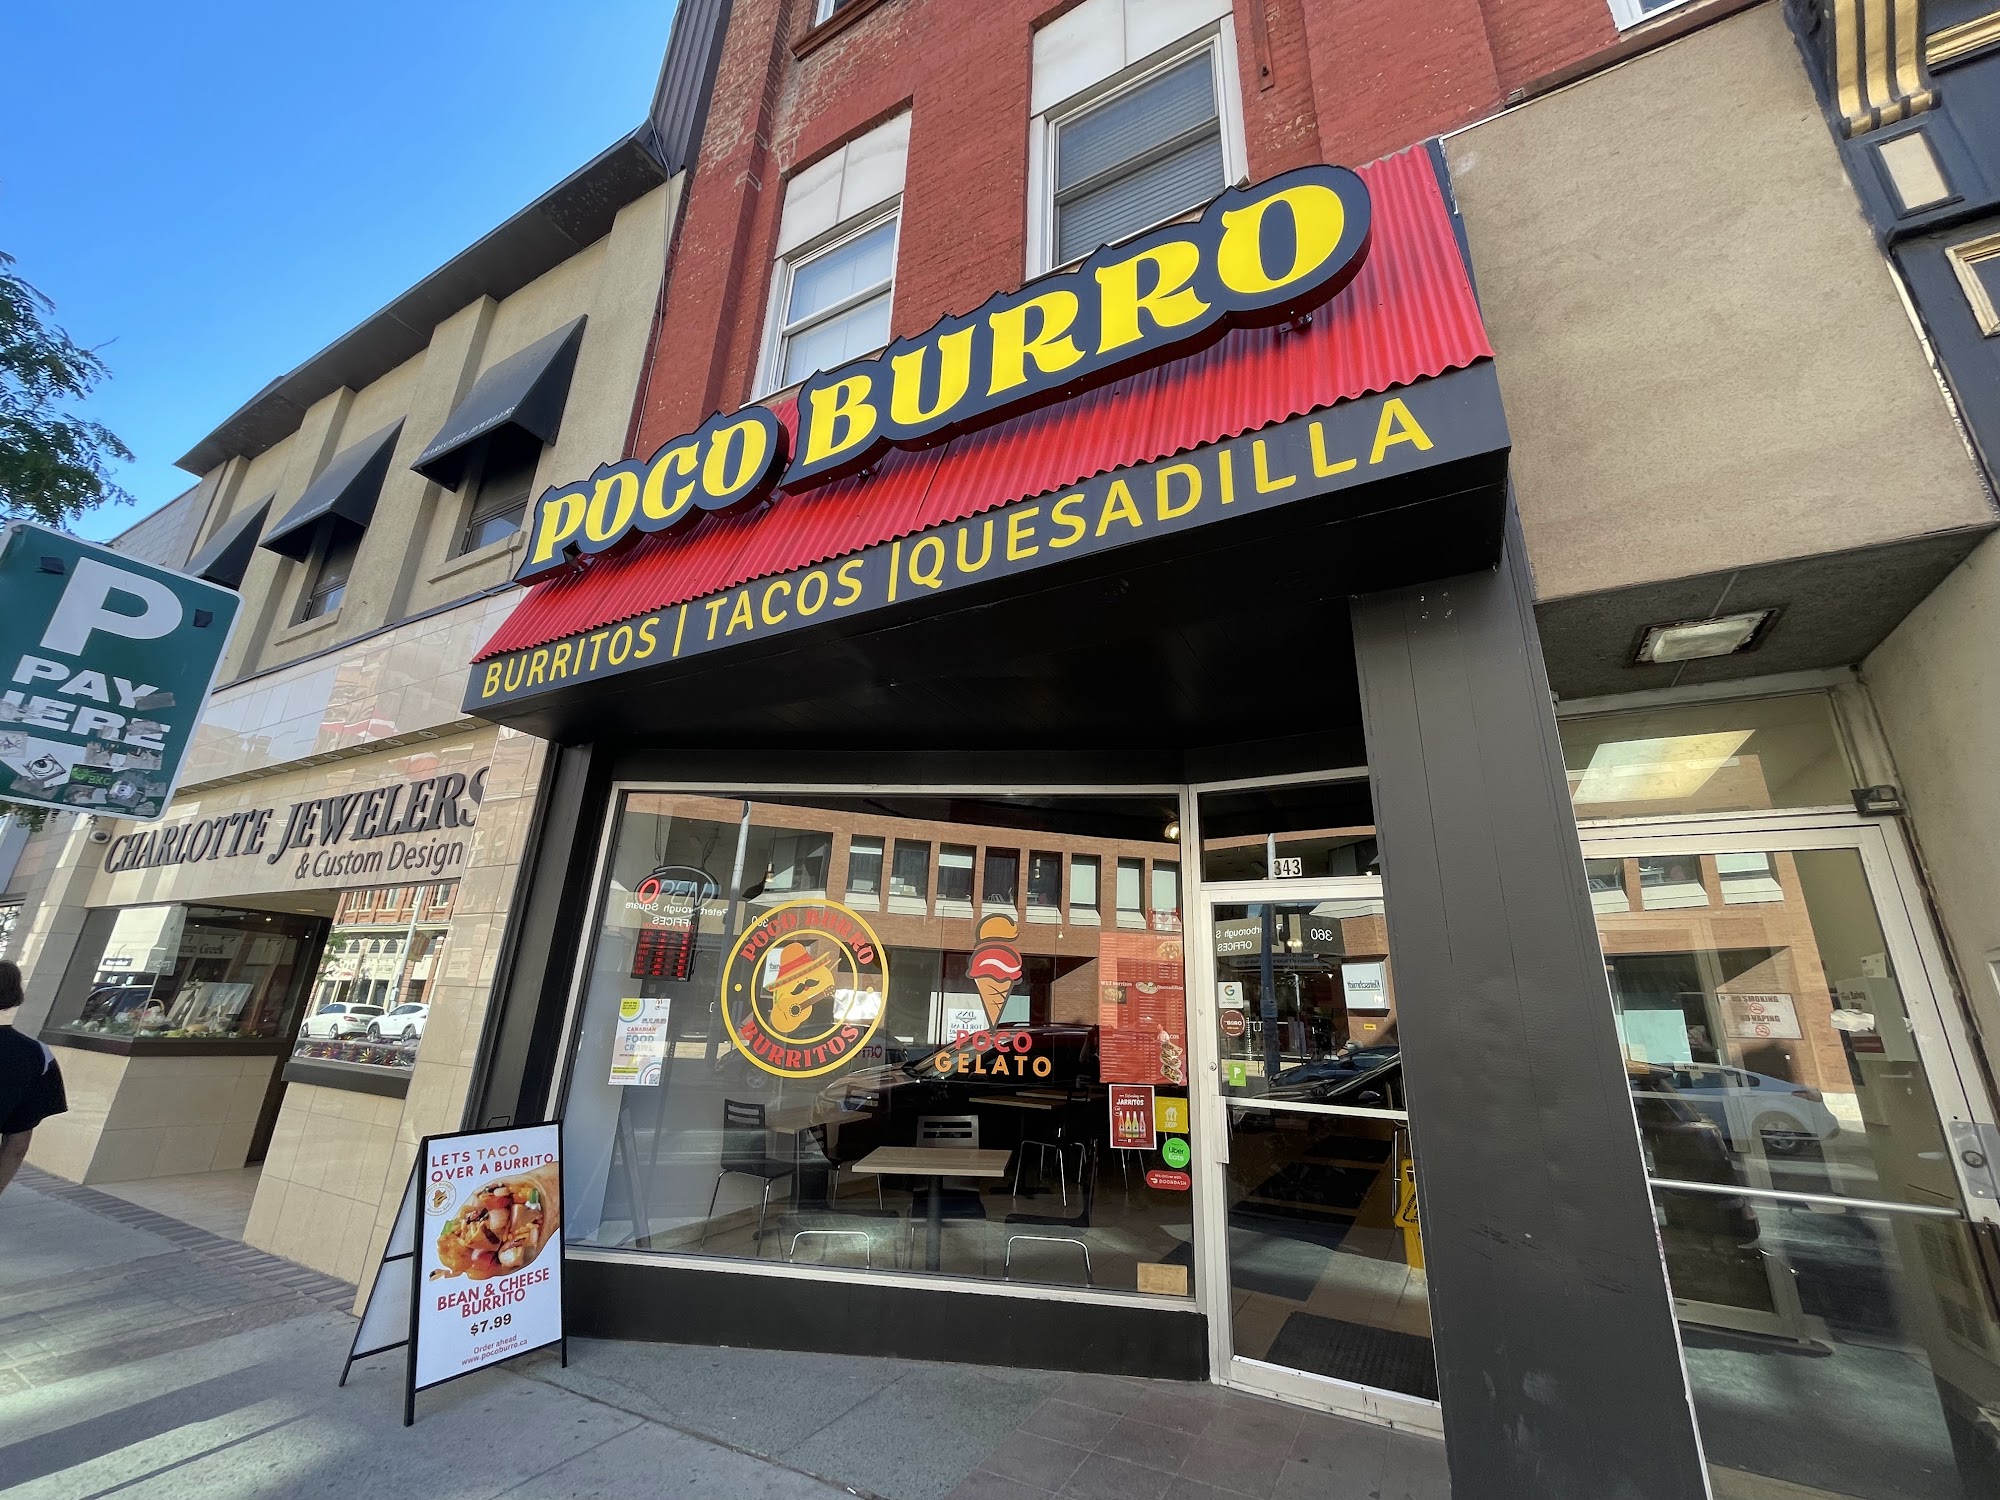 Poco Burro Burritos